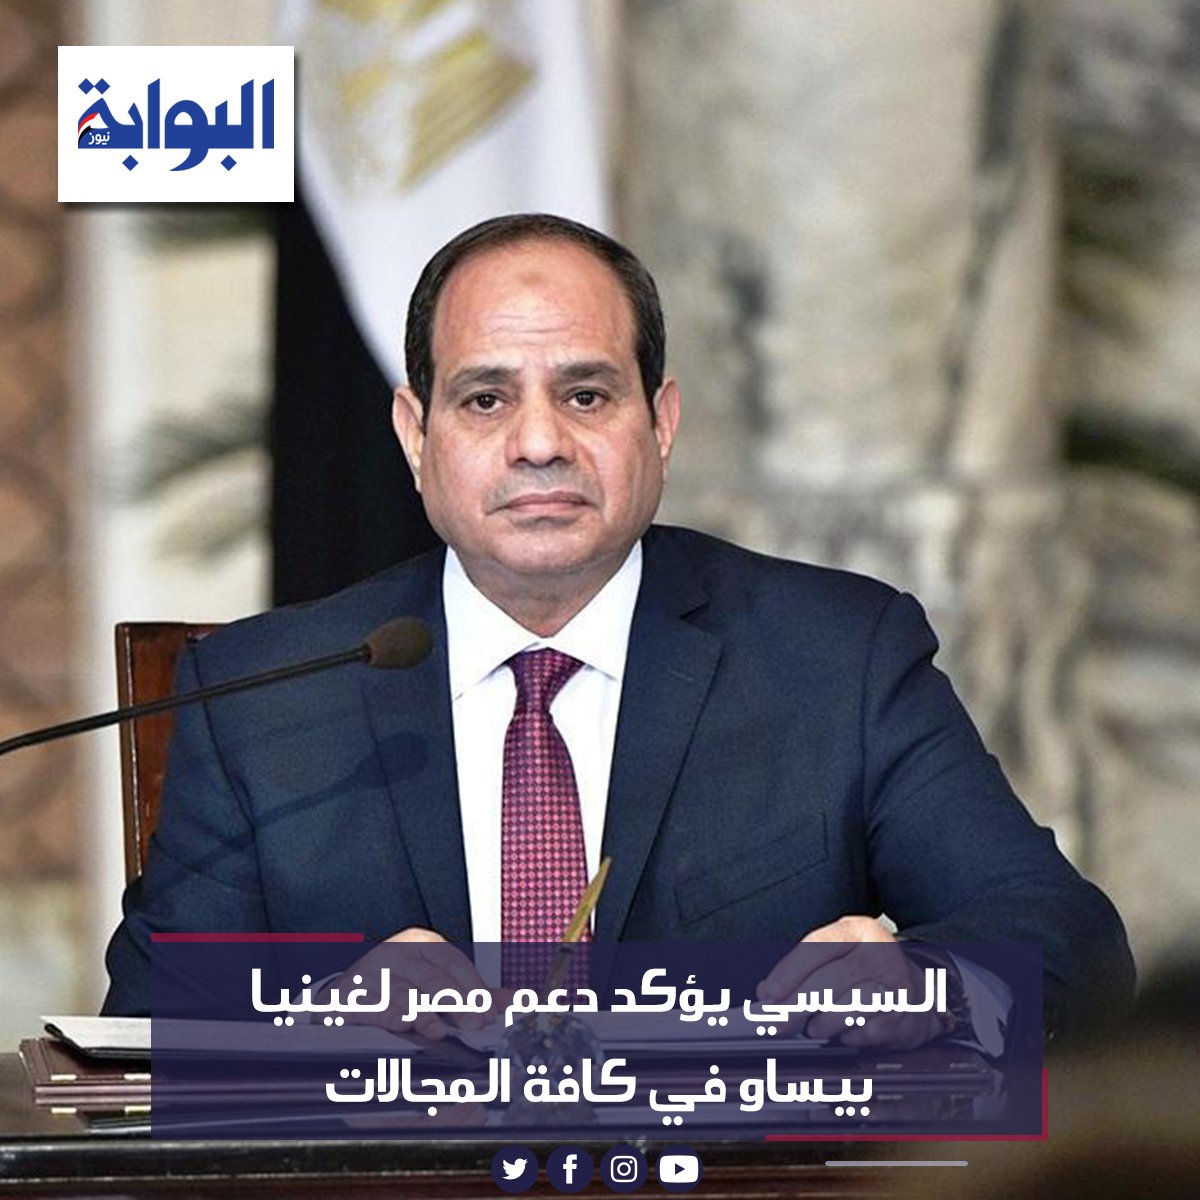 السيسي يؤكد دعم مصر لغينيا بيساو في كافة المجالات التفاصيل